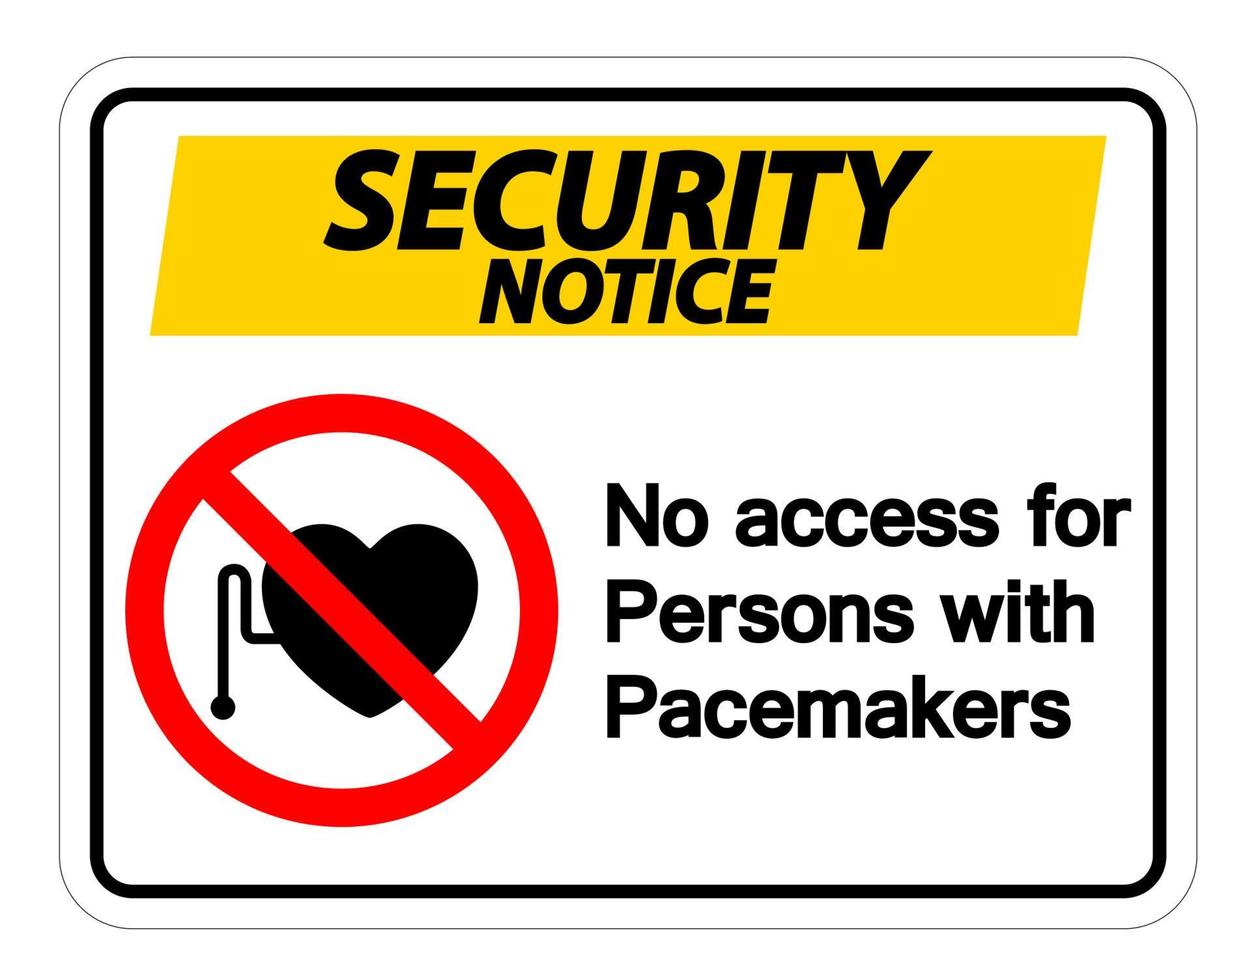 aviso de segurança sem acesso para pessoas com sinal de símbolo de marca-passo em fundo branco vetor